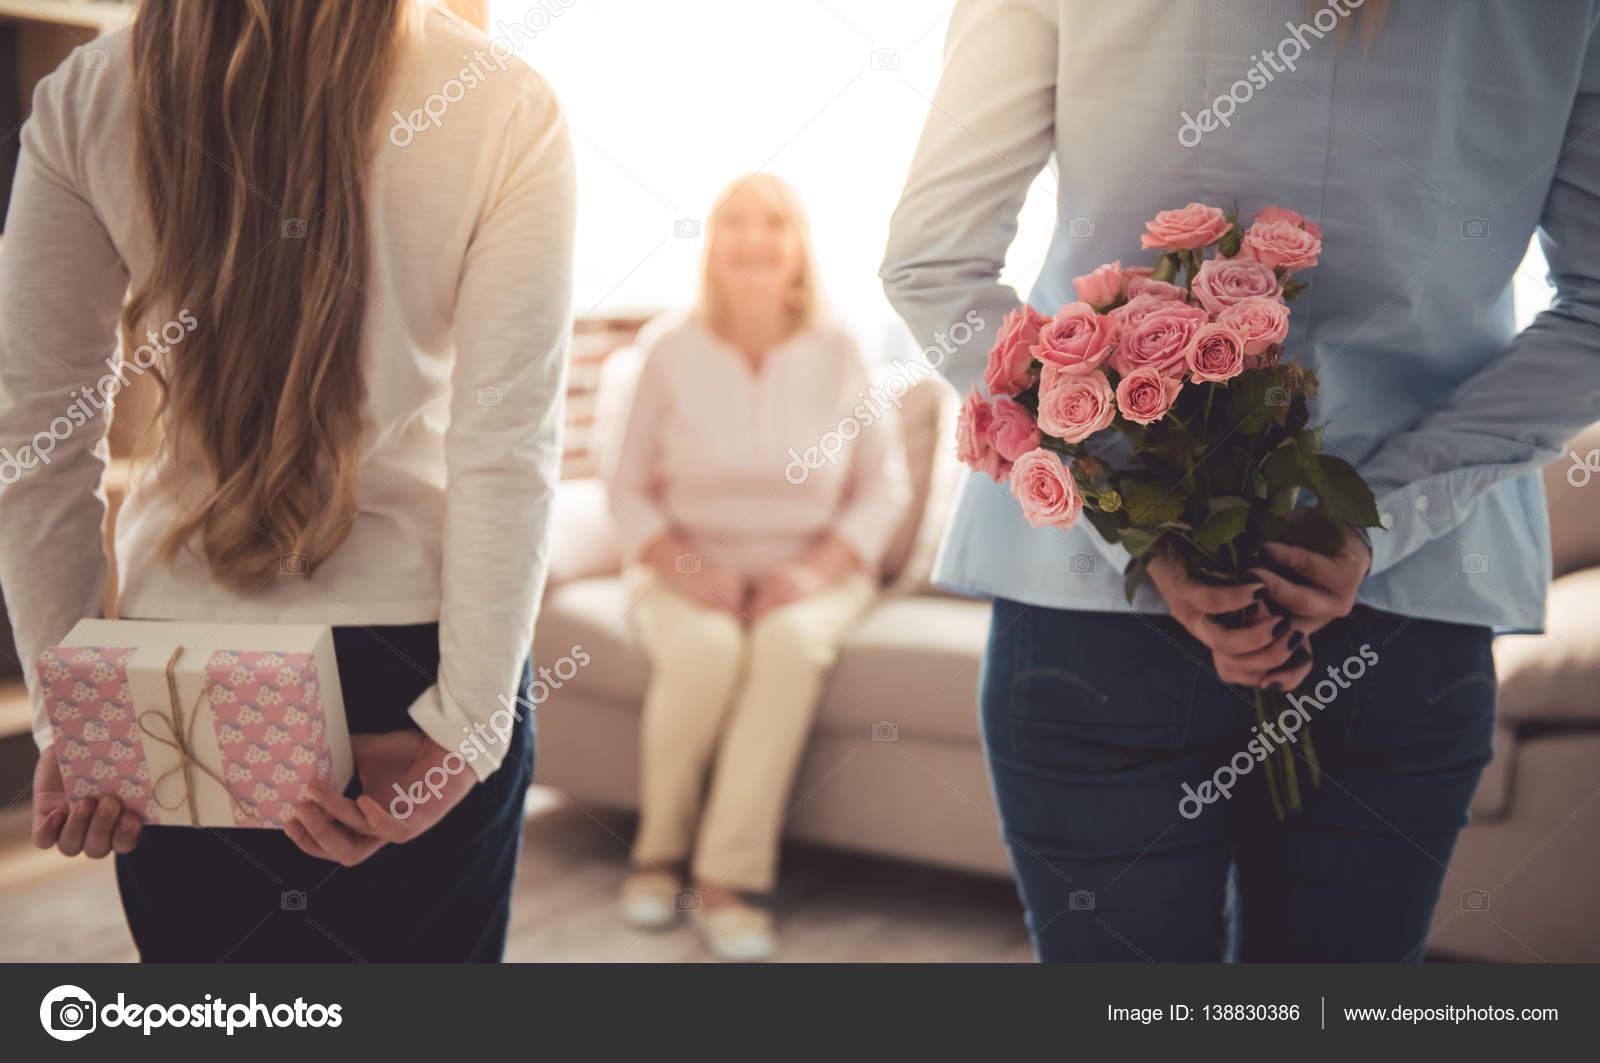 Я хочу подарок маме. Цветы подарок для девушки. Маме дарят цветы. Девочка дарит маме цветы. Ребенок дарит цветы маме.